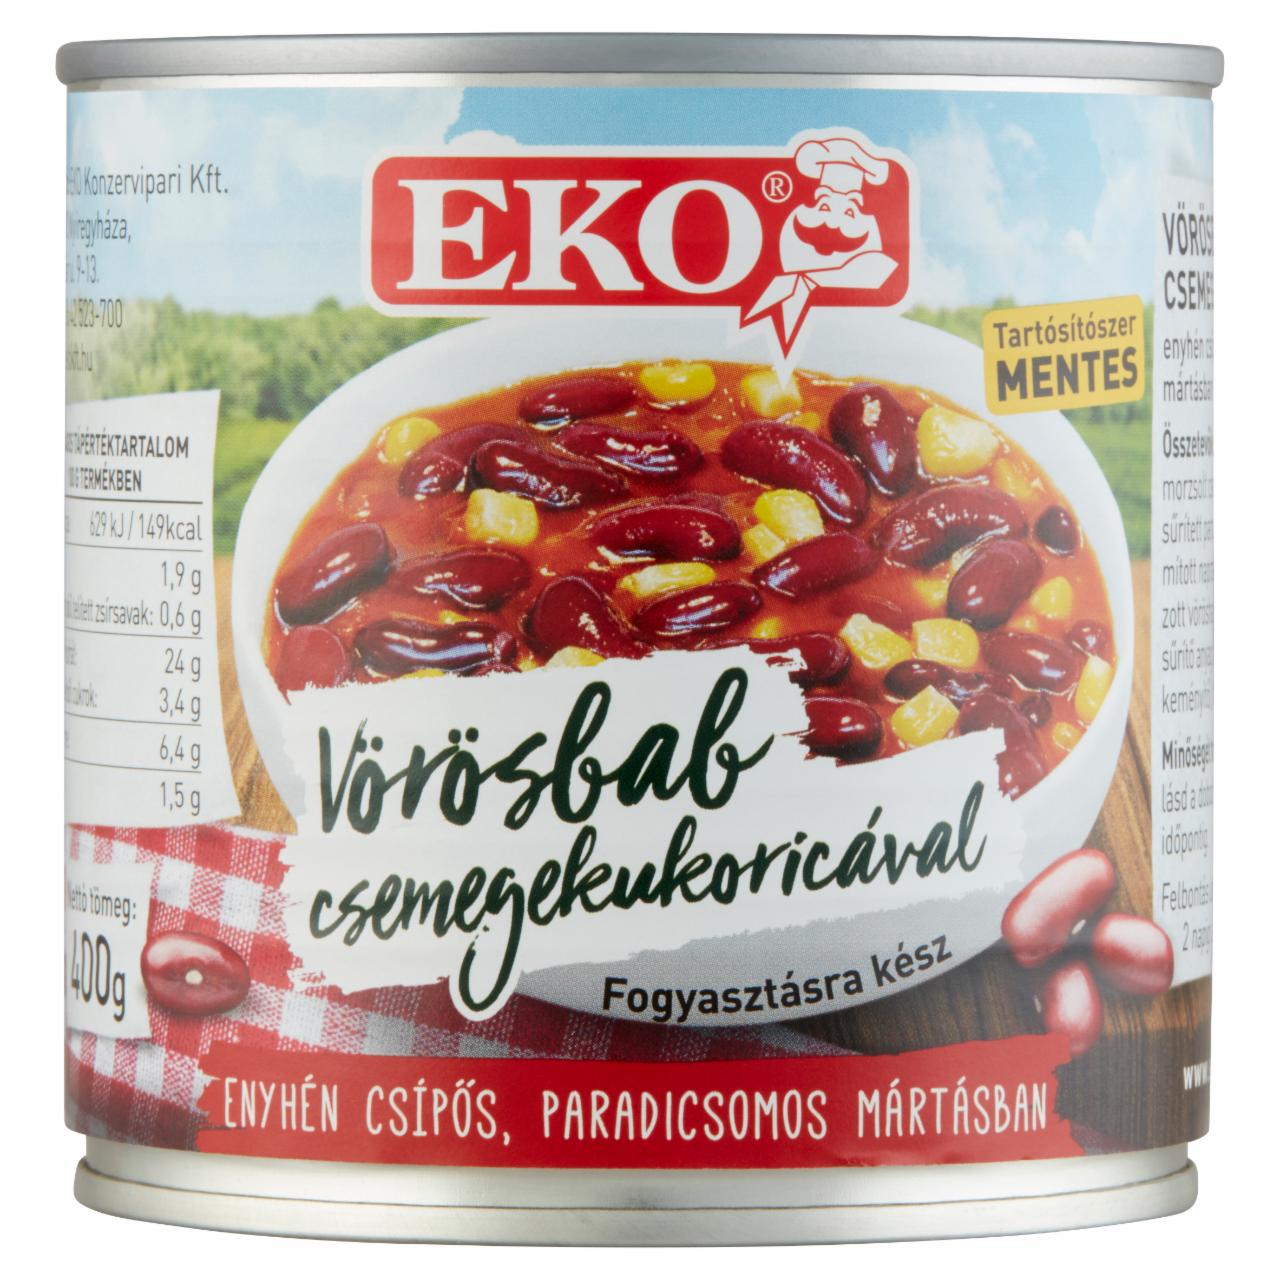 Képek - Eko vörösbab csemegekukoricával enyhén csípős, paradicsomos mártásban 400 g